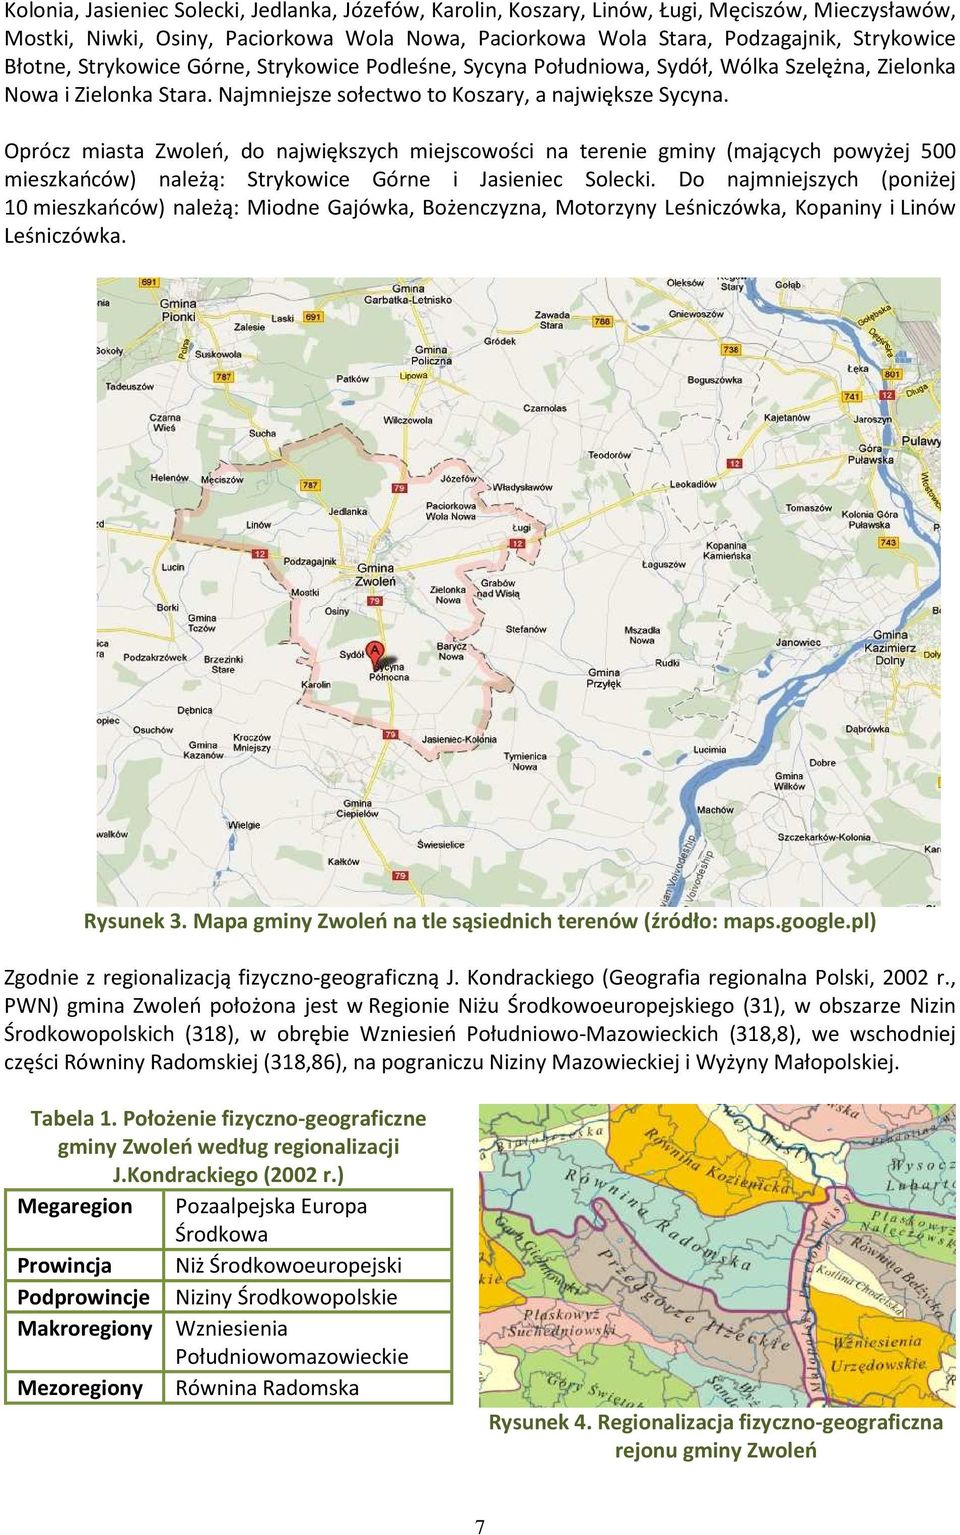 Oprócz miasta Zwoleń, do największych miejscowości na terenie gminy (mających powyżej 500 mieszkańców) należą: Strykowice Górne i Jasieniec Solecki.